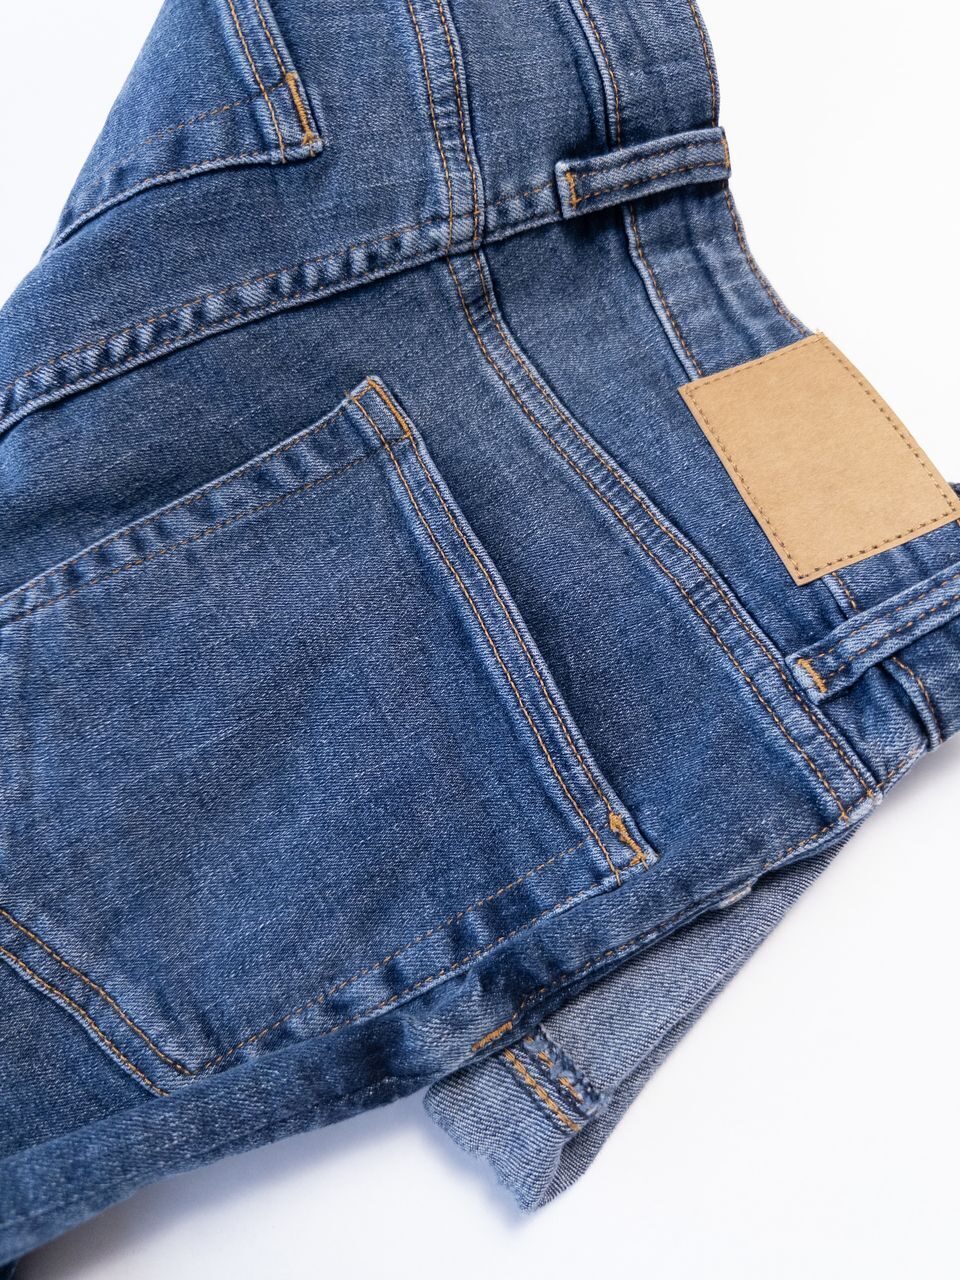 Джинсовые шорты стрейчевые цвет синий размер EUR 36 (rus 42) H&M